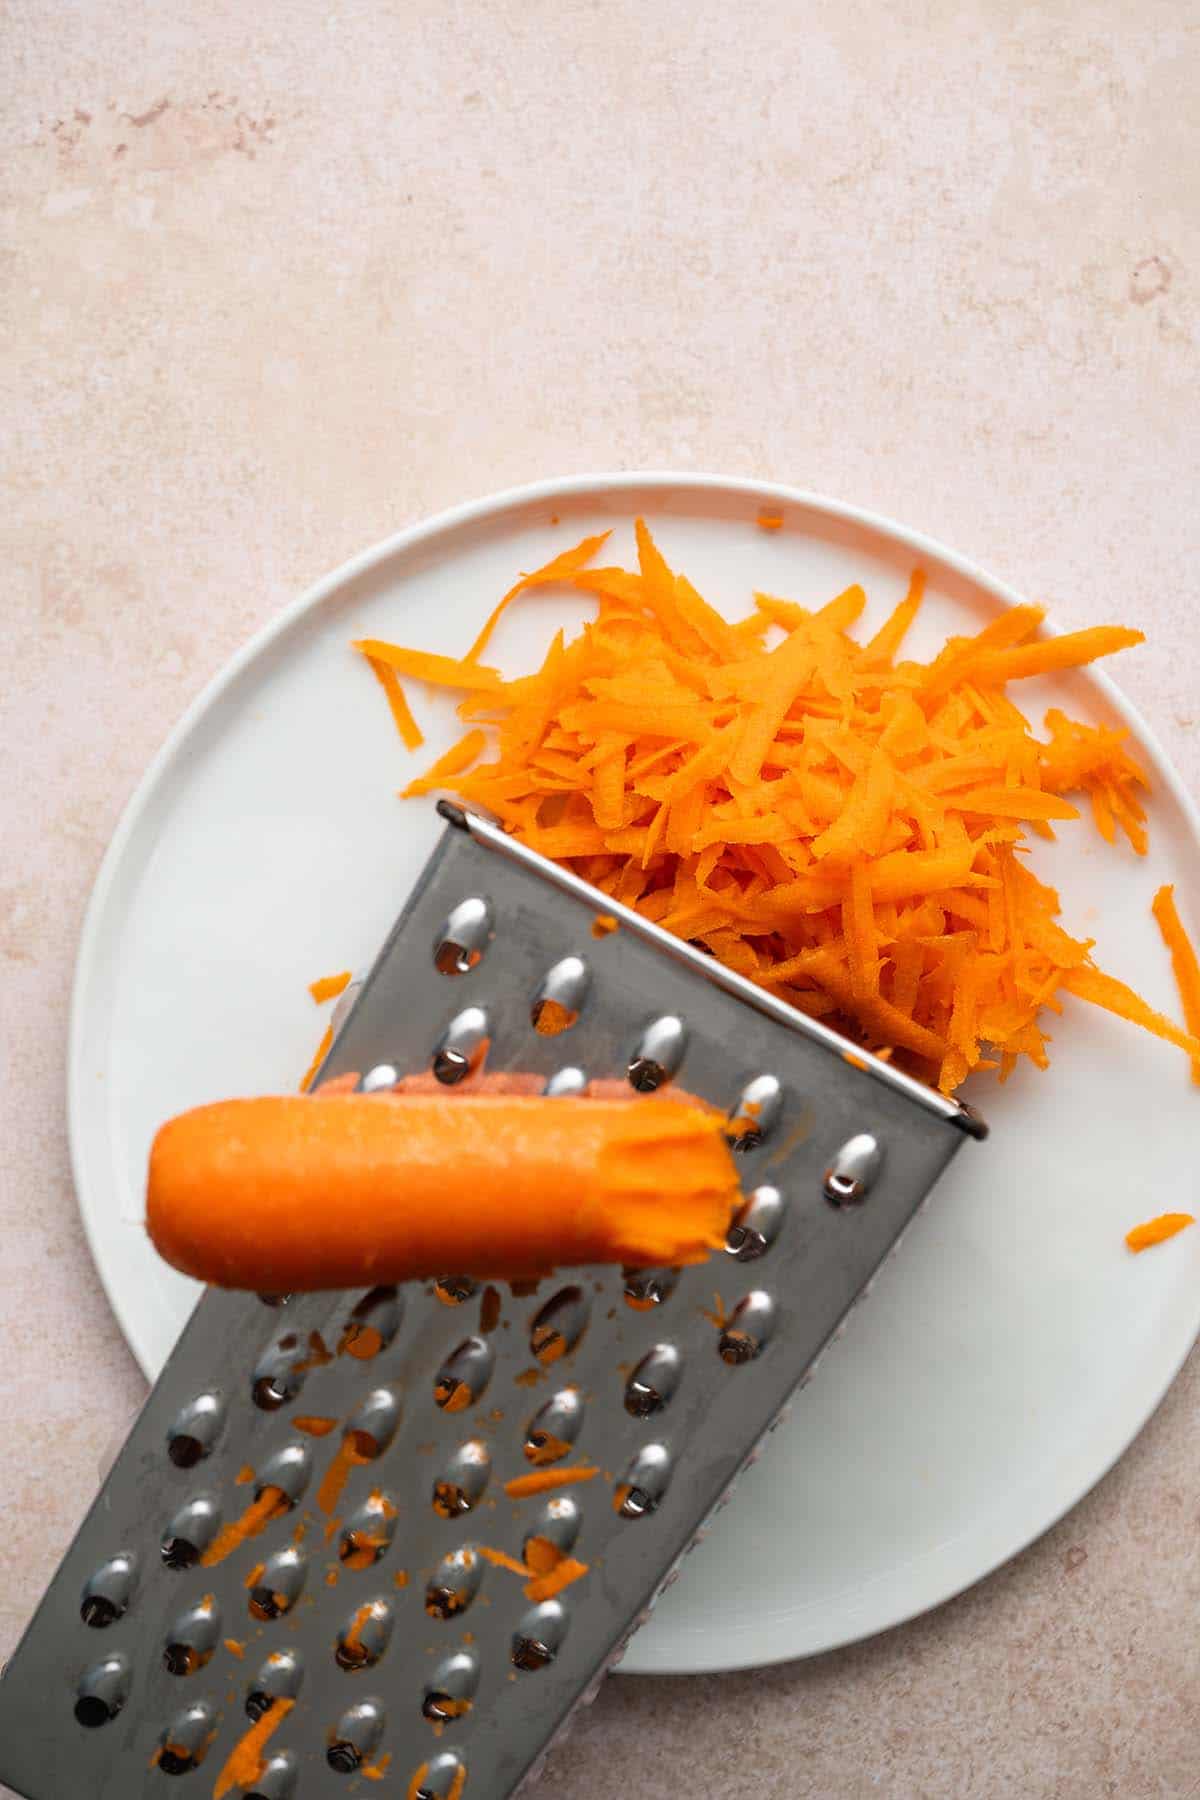 shredding carrot on box grater